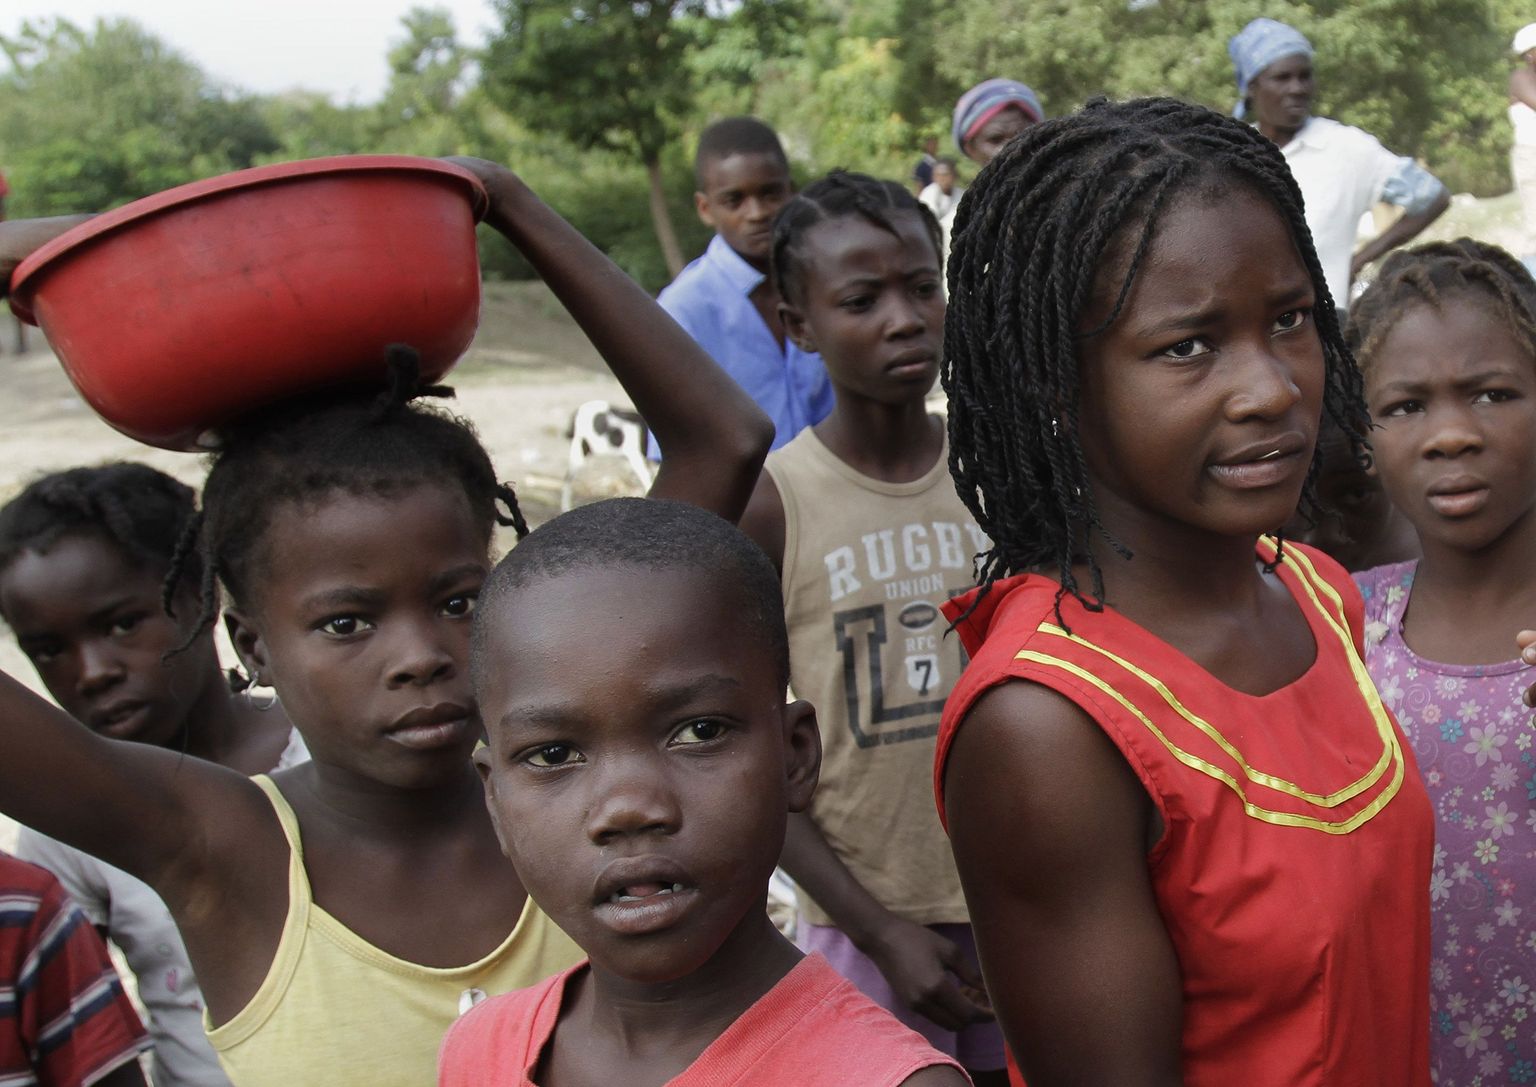 Haiti abiorganisatsioon osutus pedofiiliagängiks. Fotol Haiti lapsed